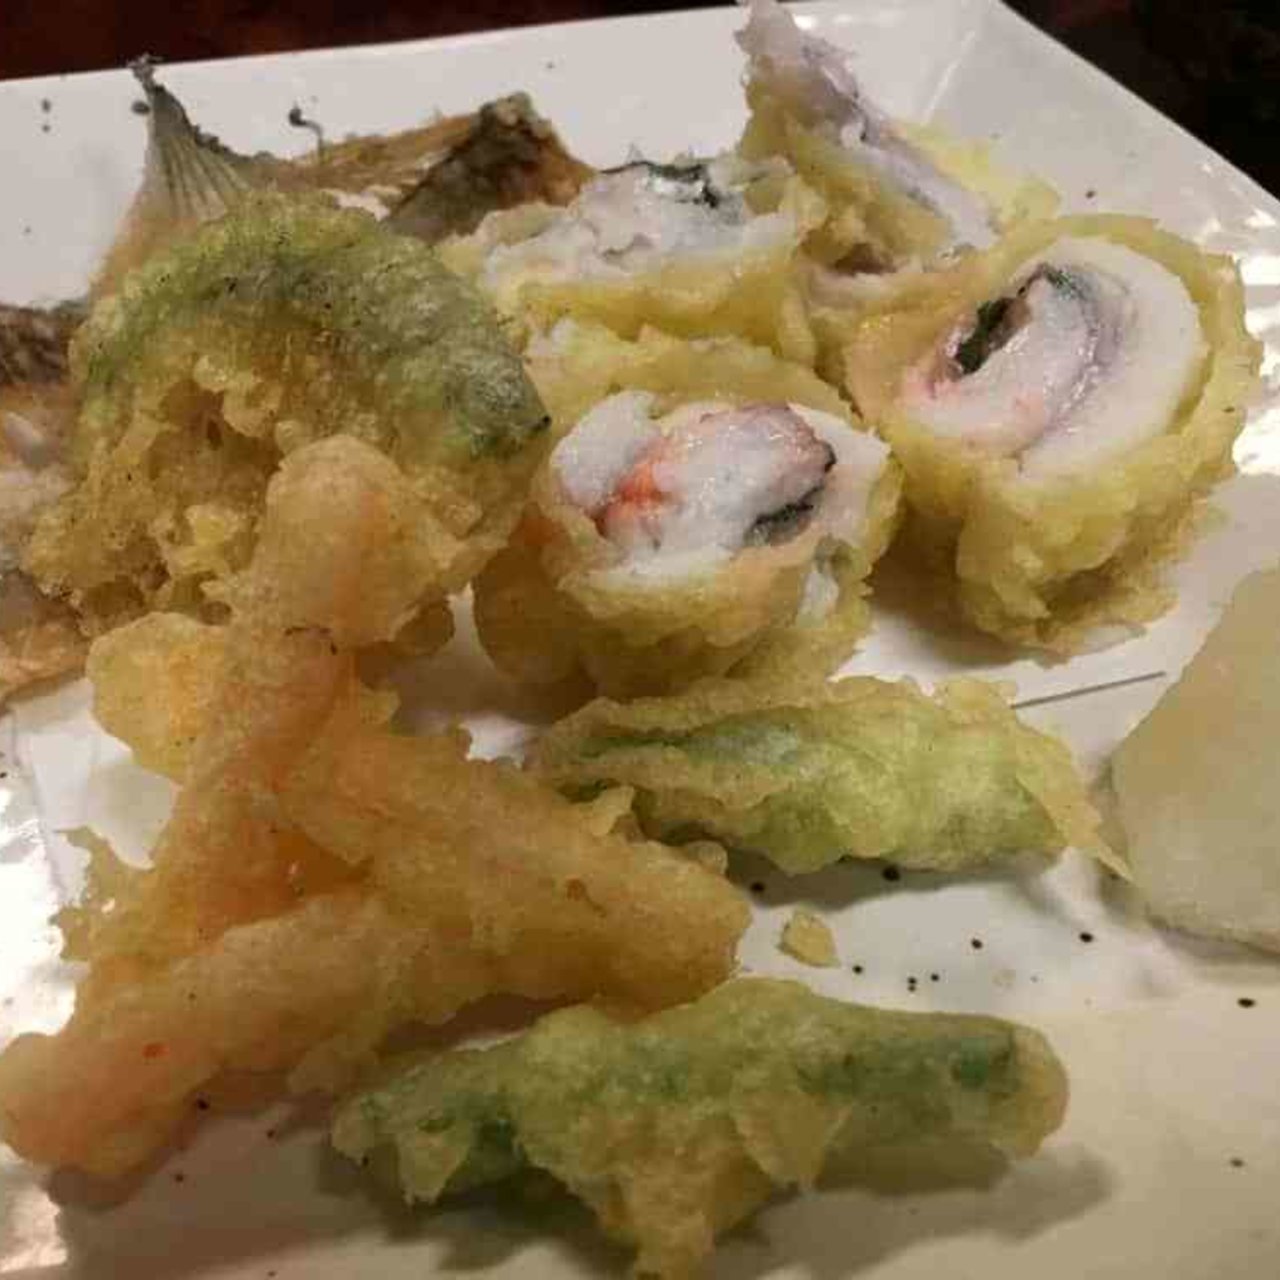 太刀魚と梅肉の天ぷら 割烹 小料理 輝石 の口コミ一覧 おいしい一皿が集まるグルメコミュニティサービス Sarah